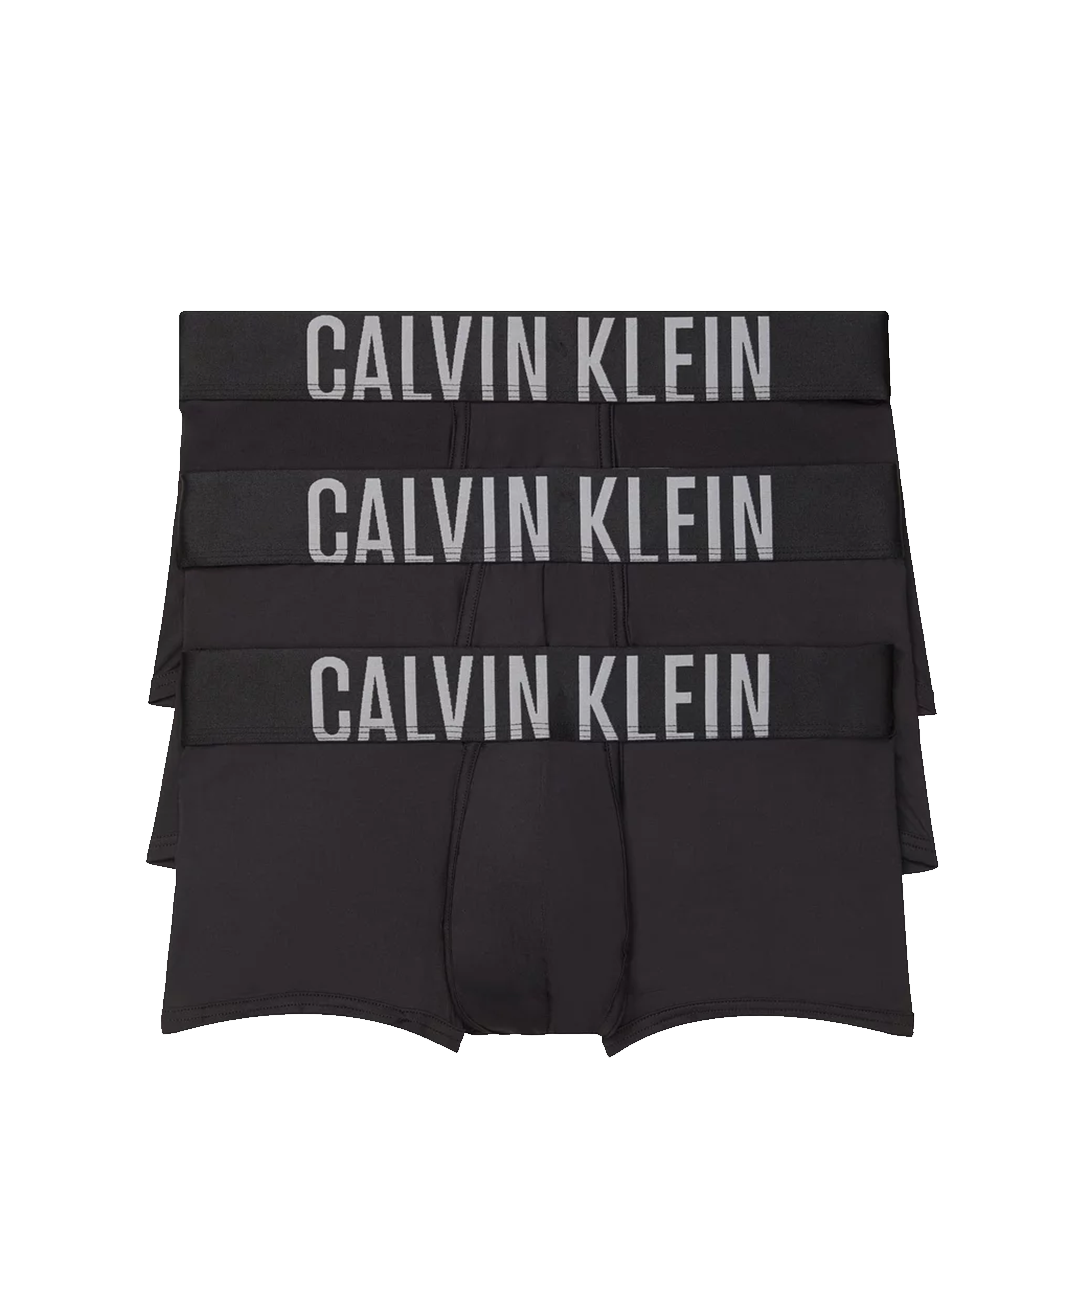 Calvin Klein Women's Carousel Bralette 2pk